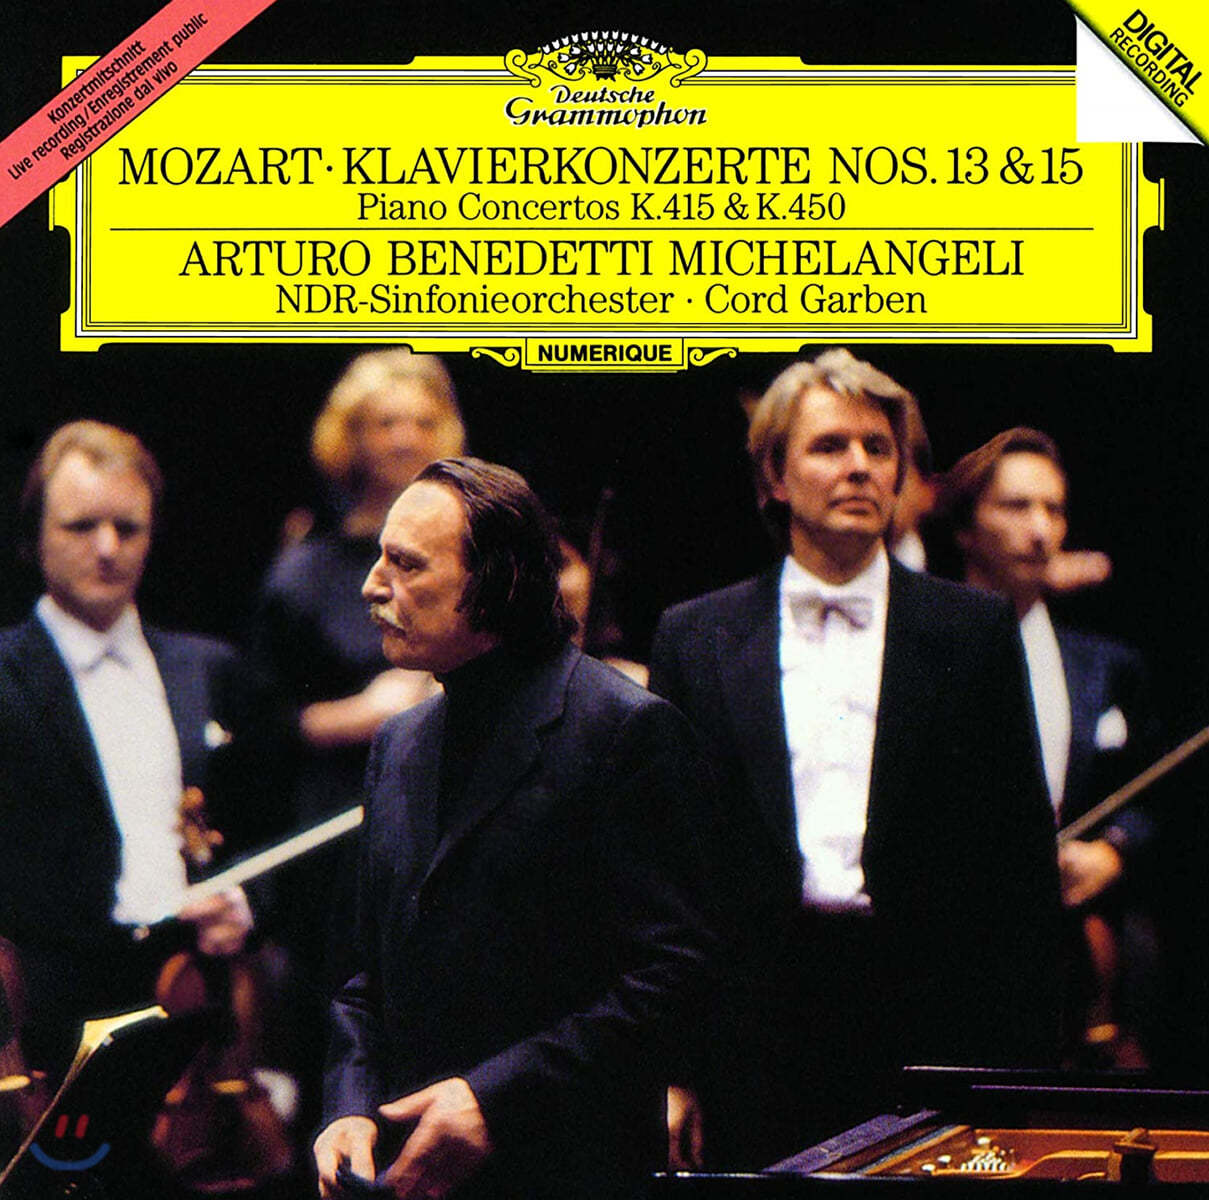 Arturo Benedetti Michelangeli 모차르트: 피아노 협주곡 13, 15번 (Mozart: Piano Concertos K.415, 450)